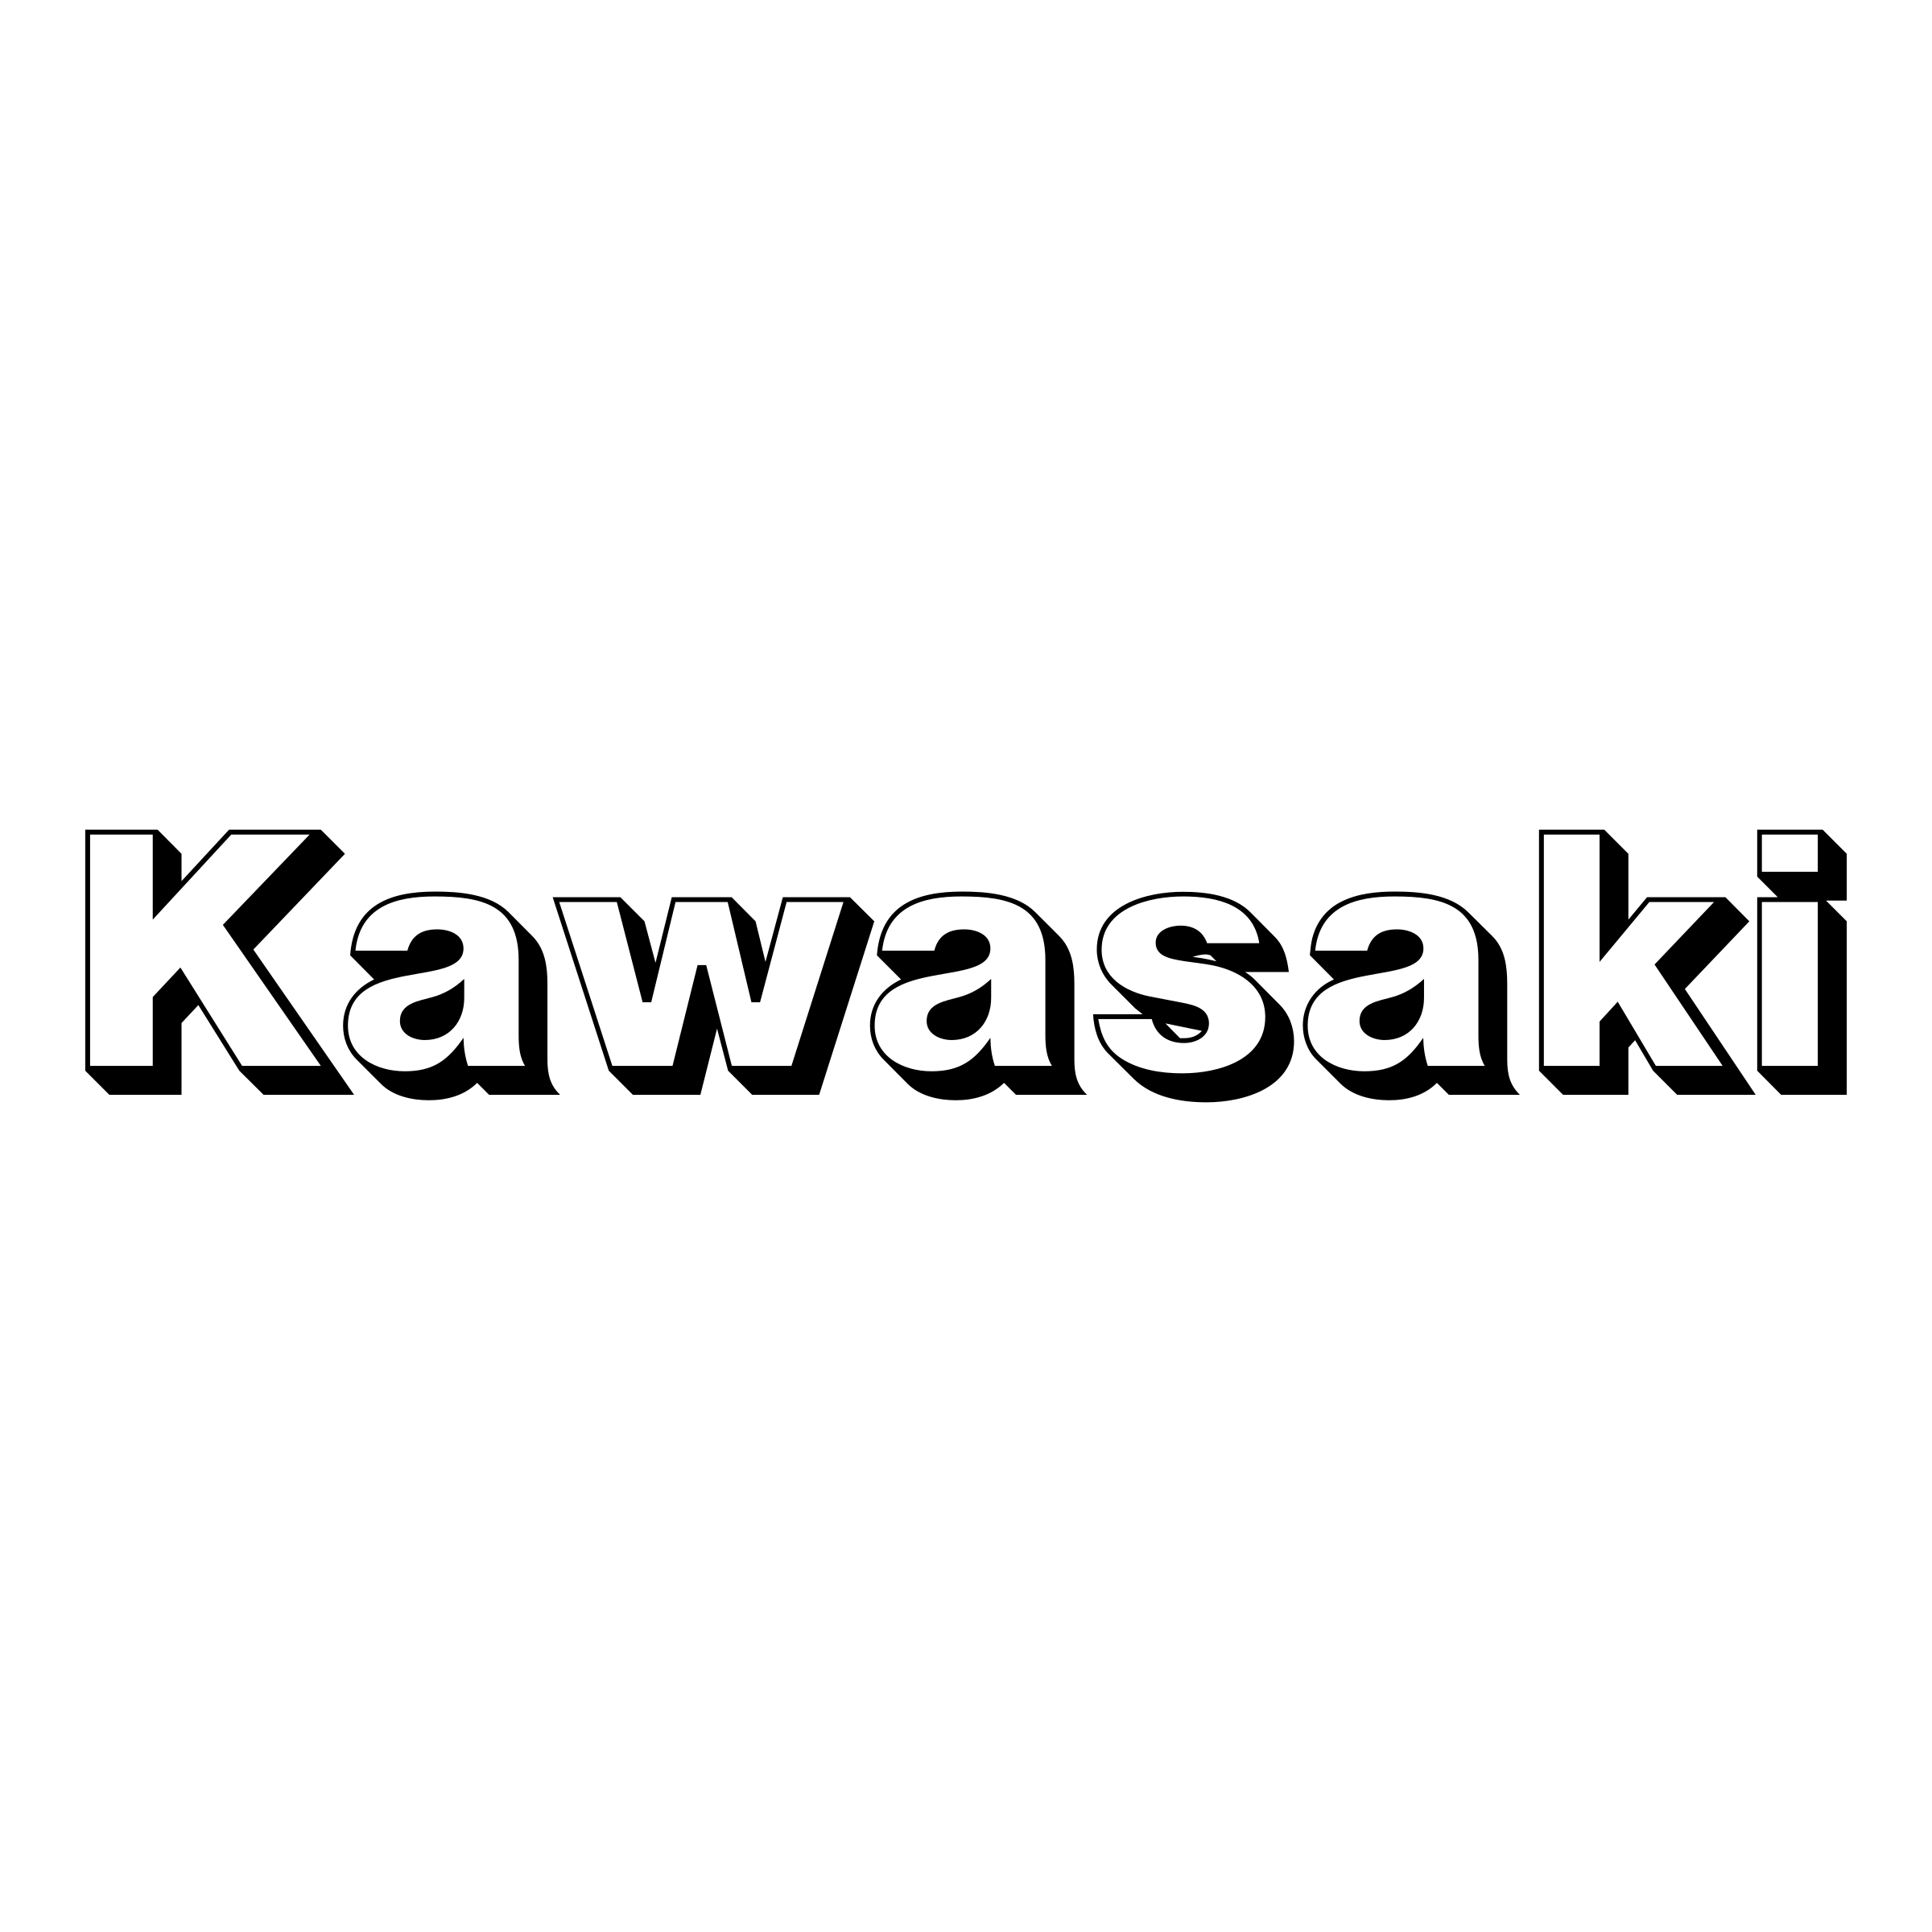 Kawasaki Motorcycle Logo Hist